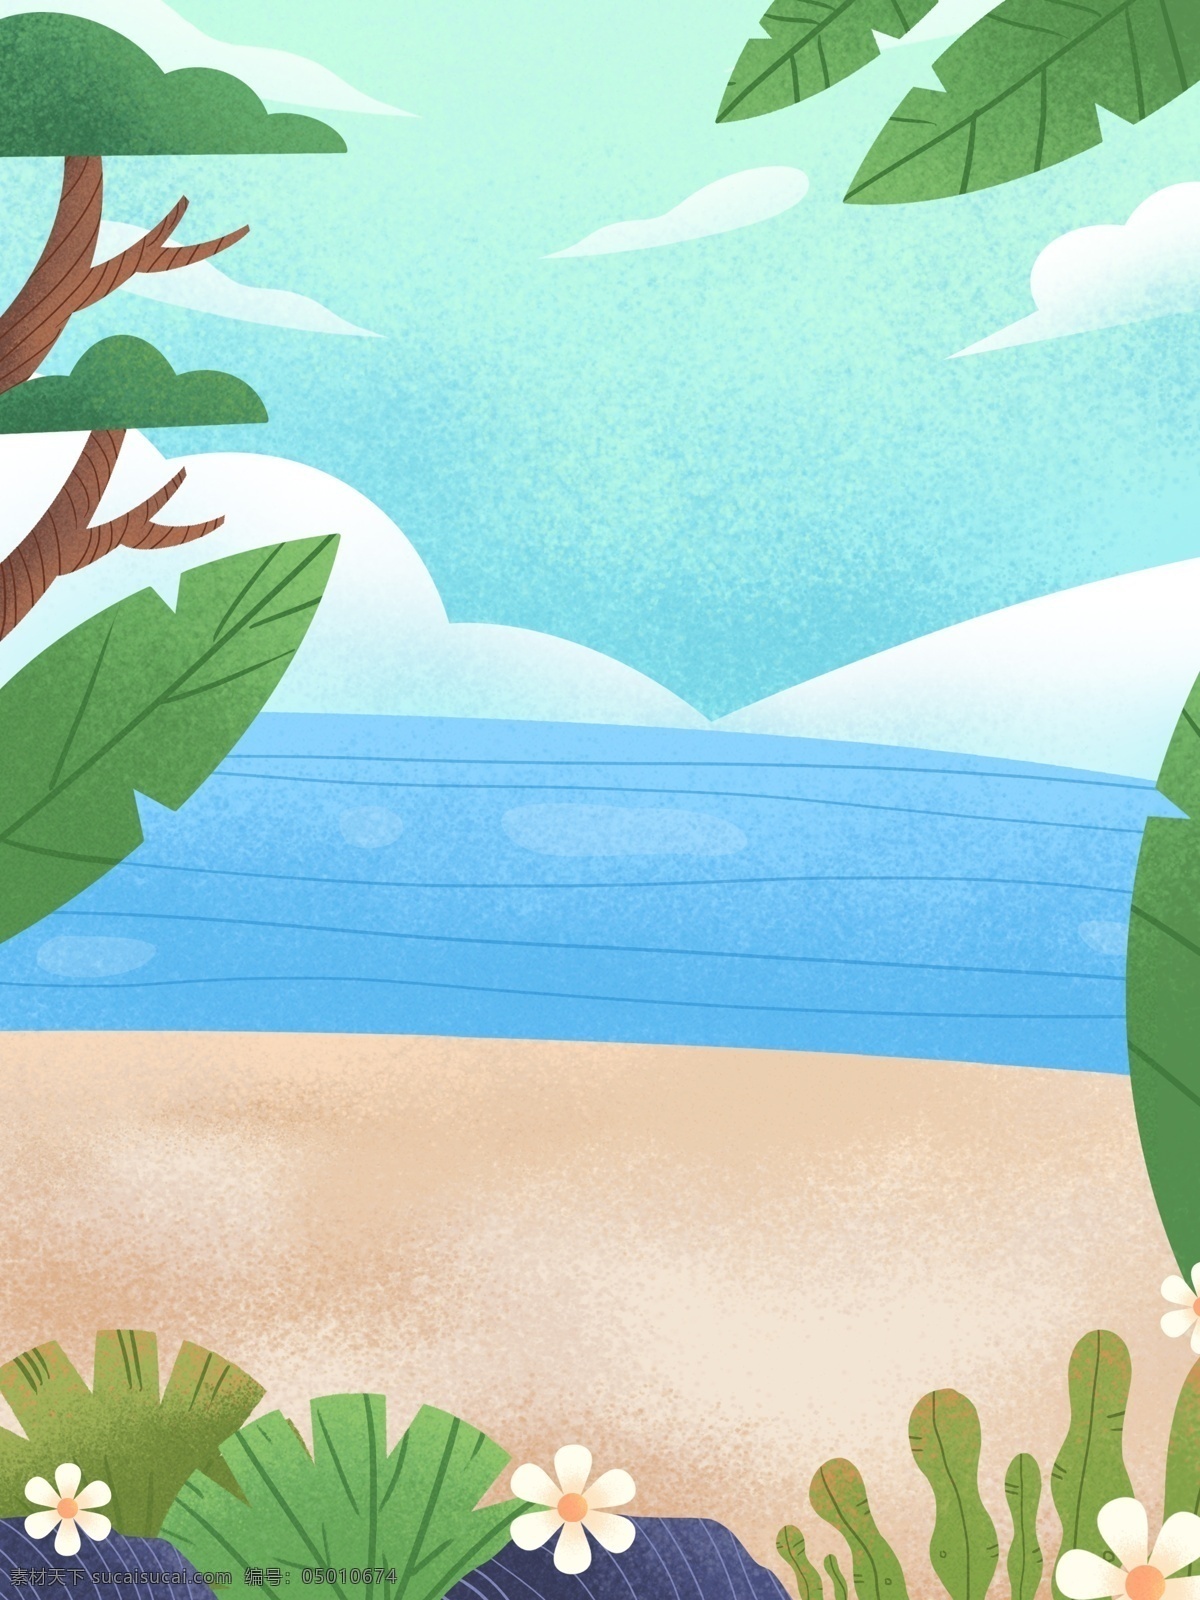 二十四节气 夏至 海滩 背景 立夏 夏天背景 绿叶 树叶 大海 沙滩 背景设计 促销背景 背景展板图 背景图